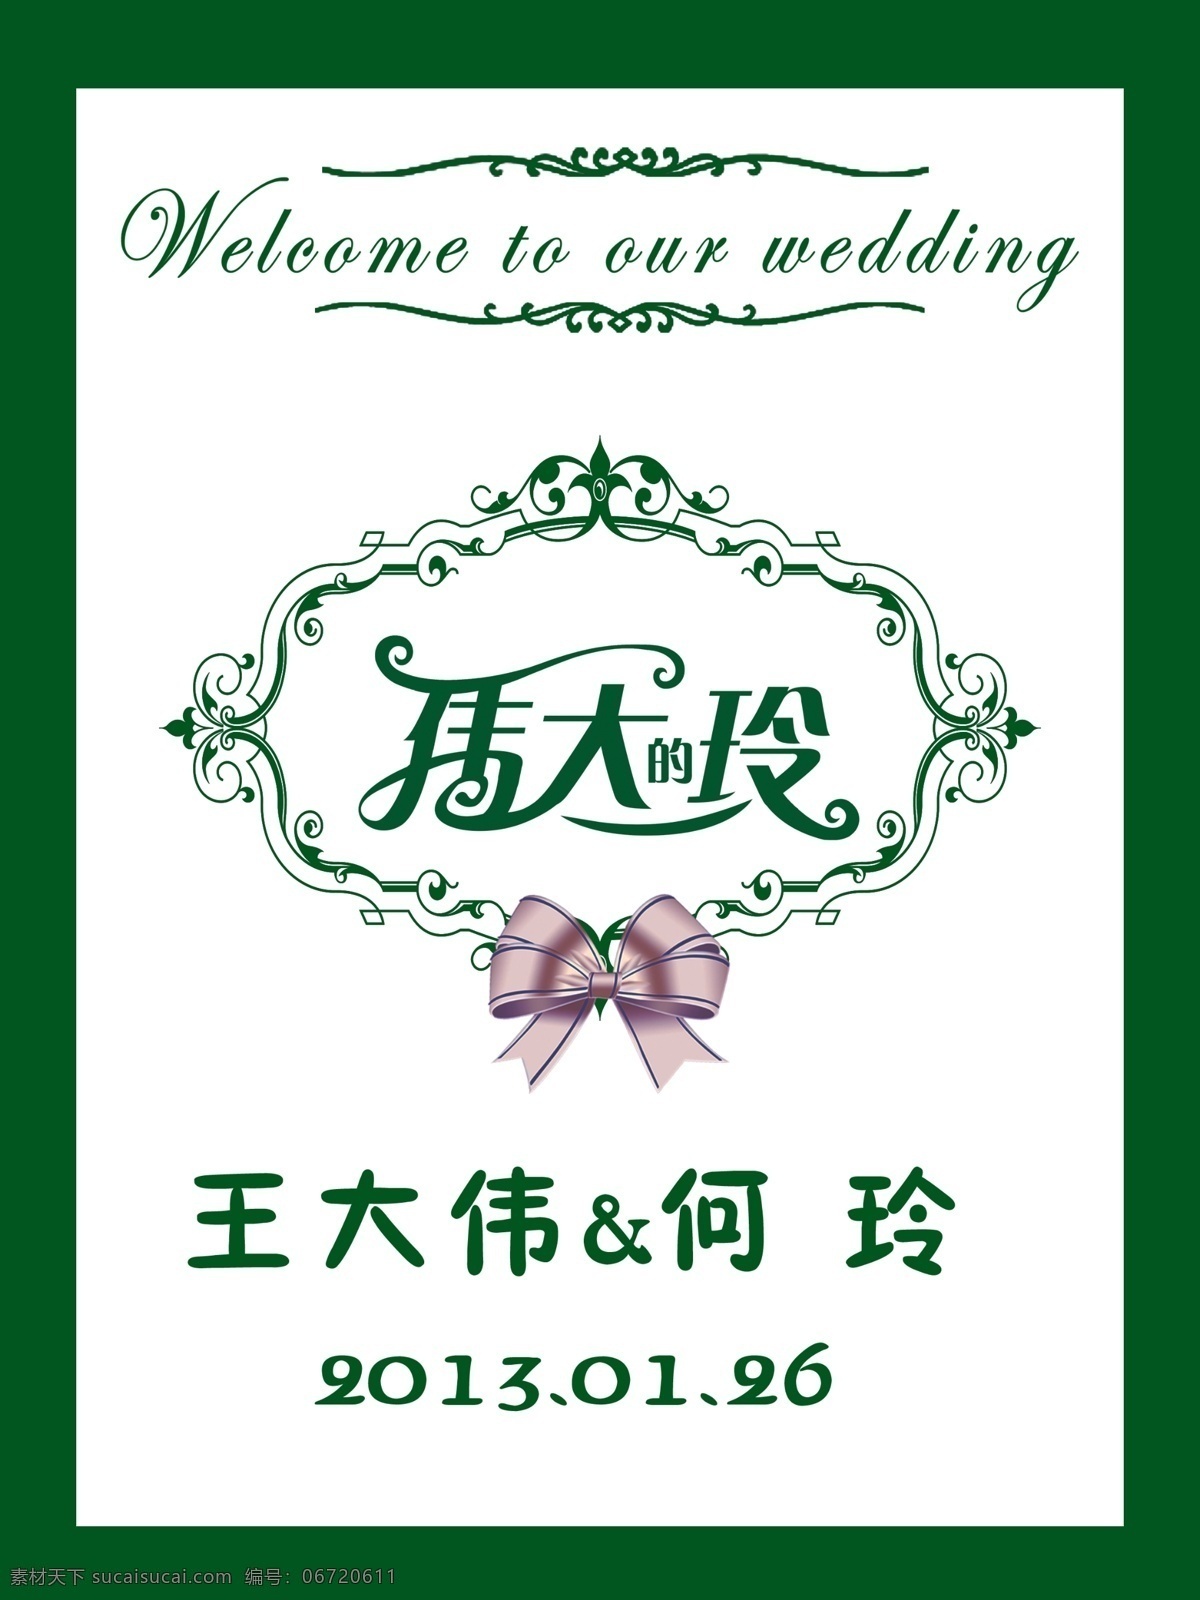 婚礼logo 婚礼指示牌 指示牌 绿色指示牌 伟大的玲